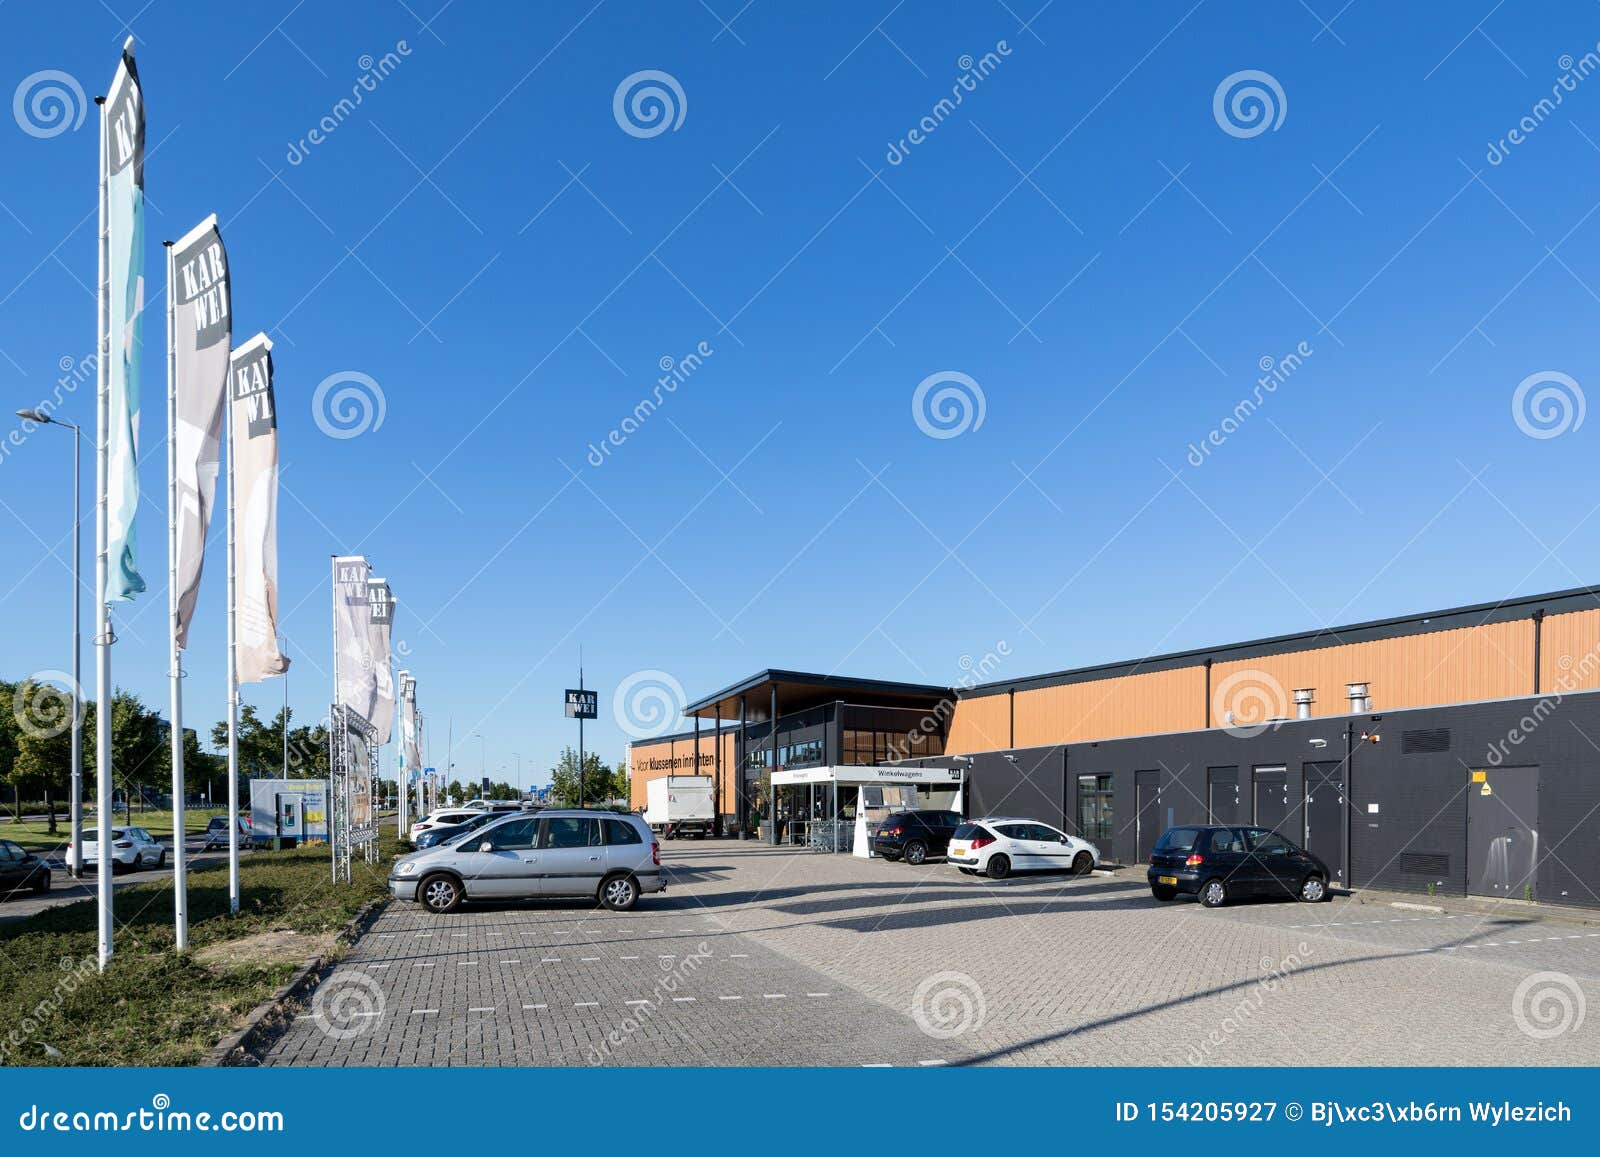 Karweiijzerhandel in Hoogvliet, Nederland Redactionele Fotografie of commercieel, nederlands: 154205927